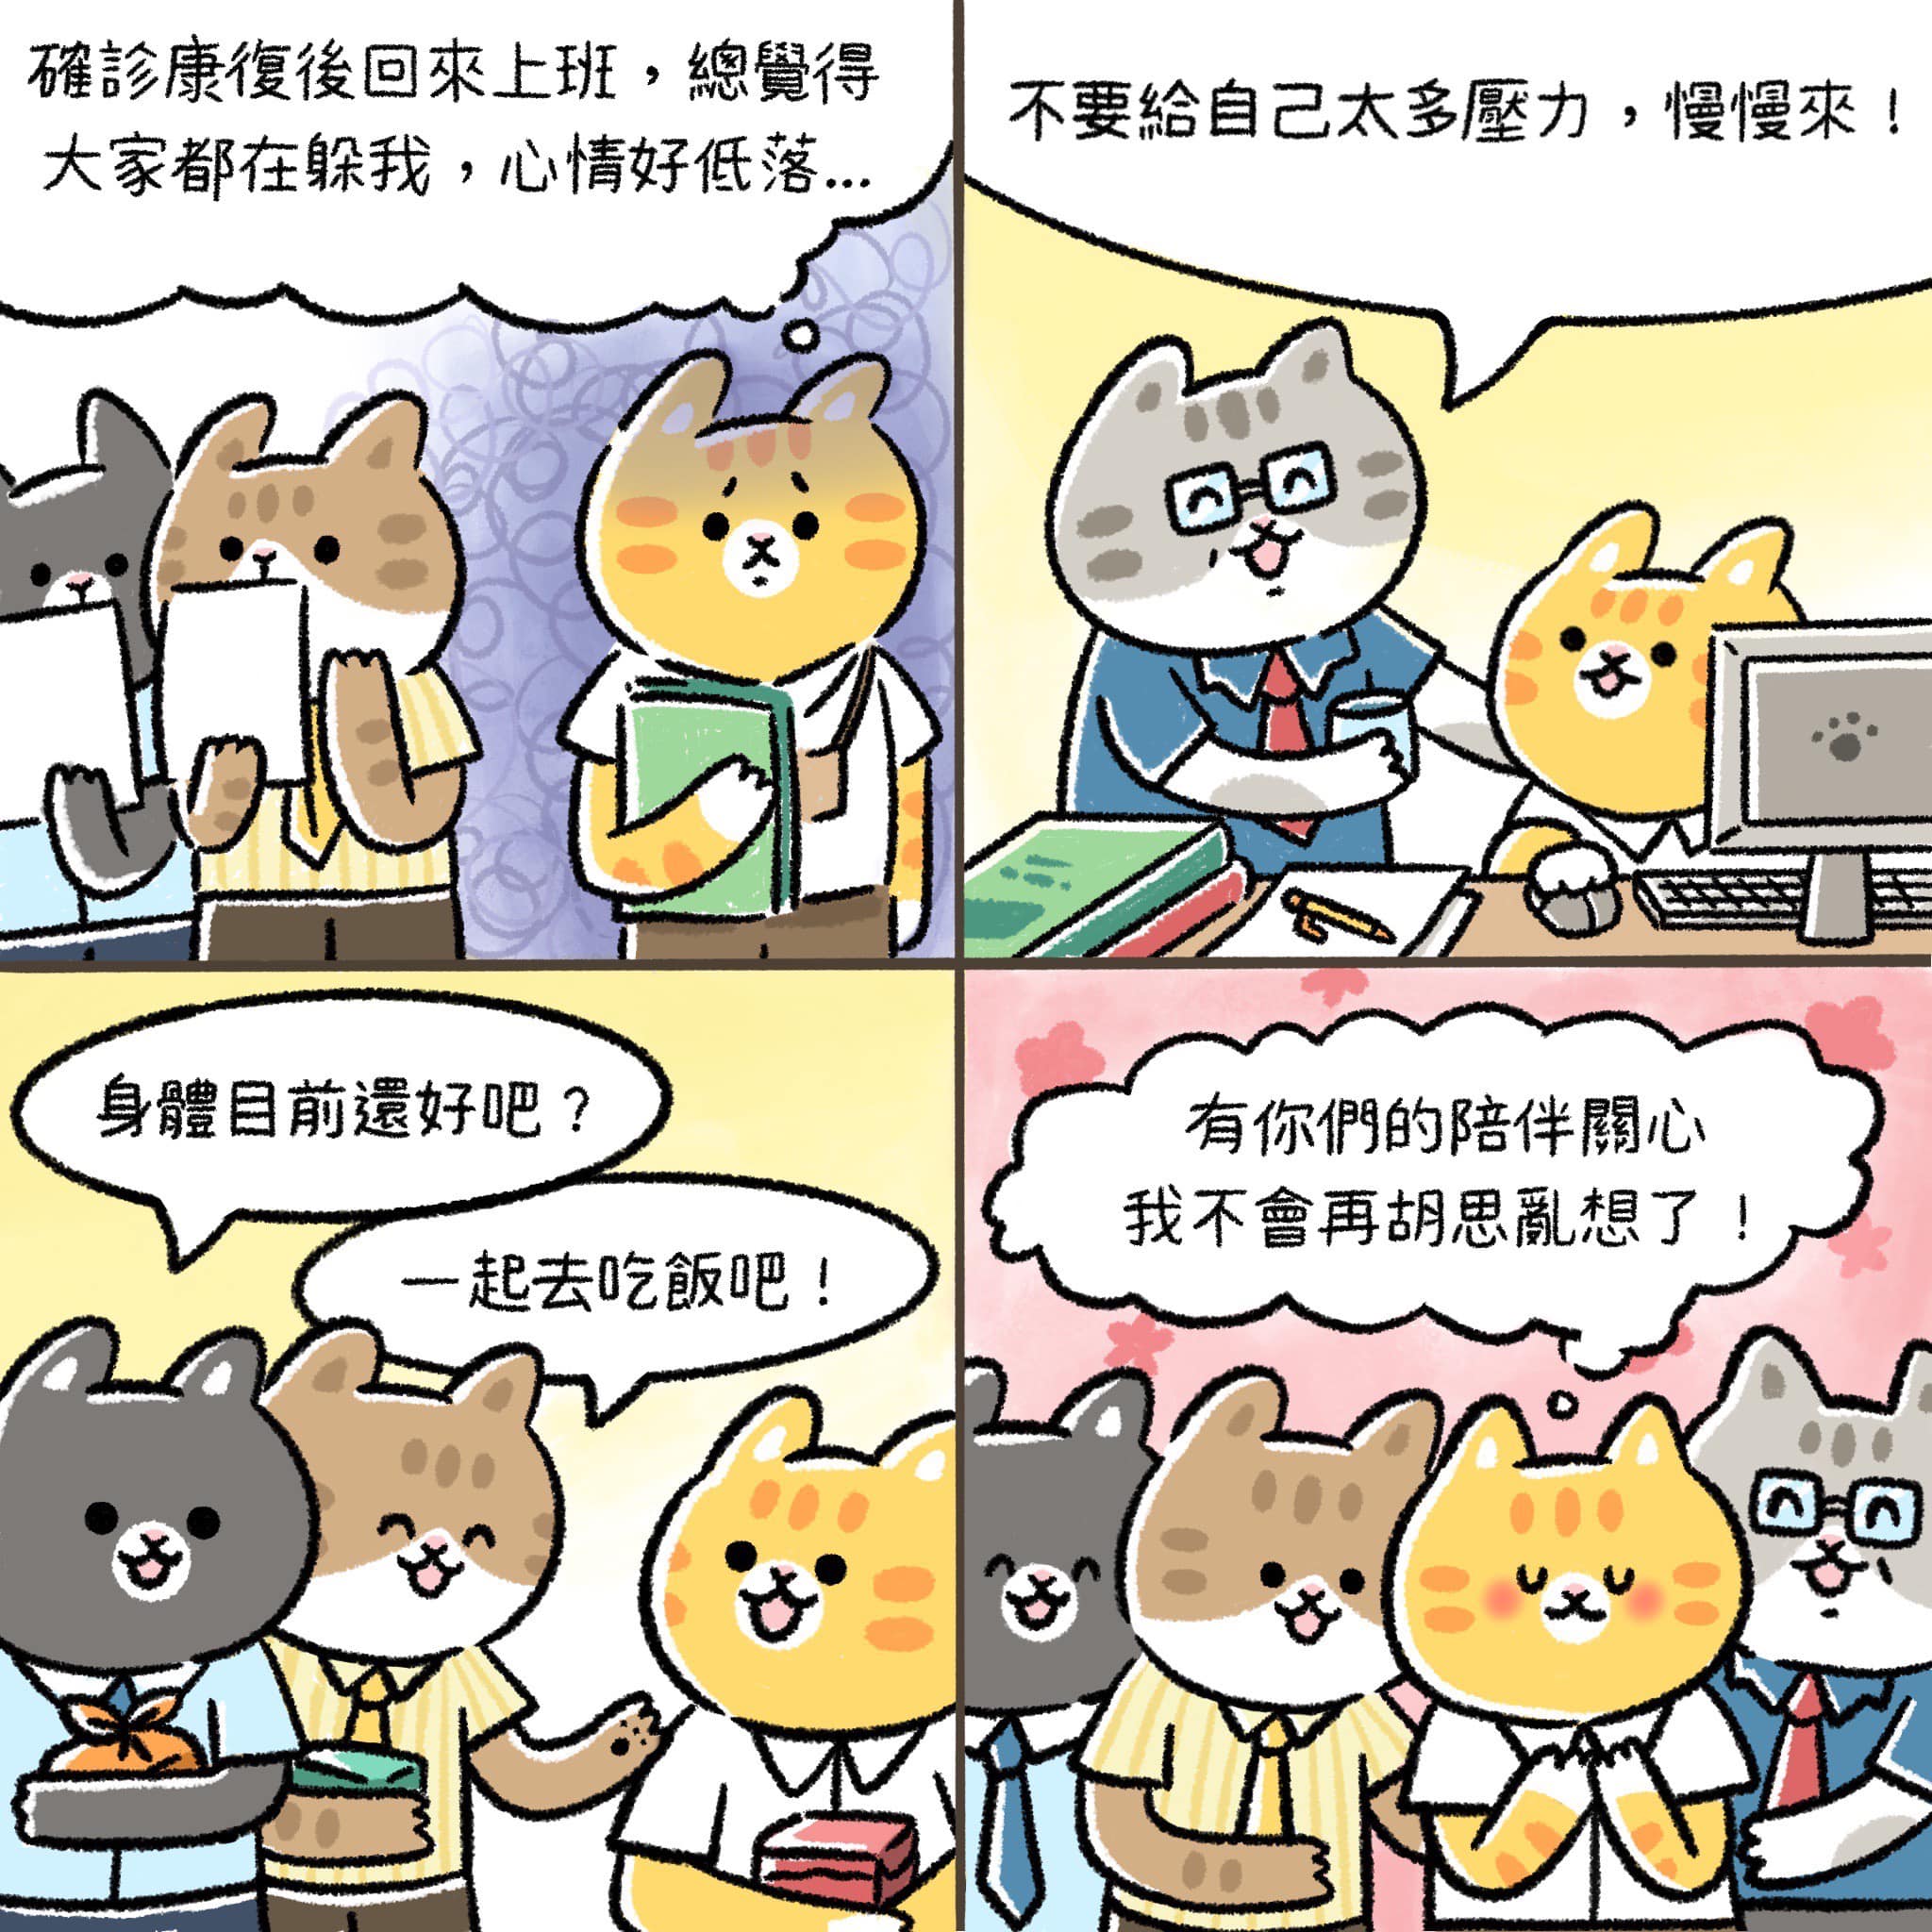 為關注疫後民眾心理健康，中華心理衛生協會推廣「心疫苗抓住你的心」漫畫徵稿活動，請踴躍參加，請查照。